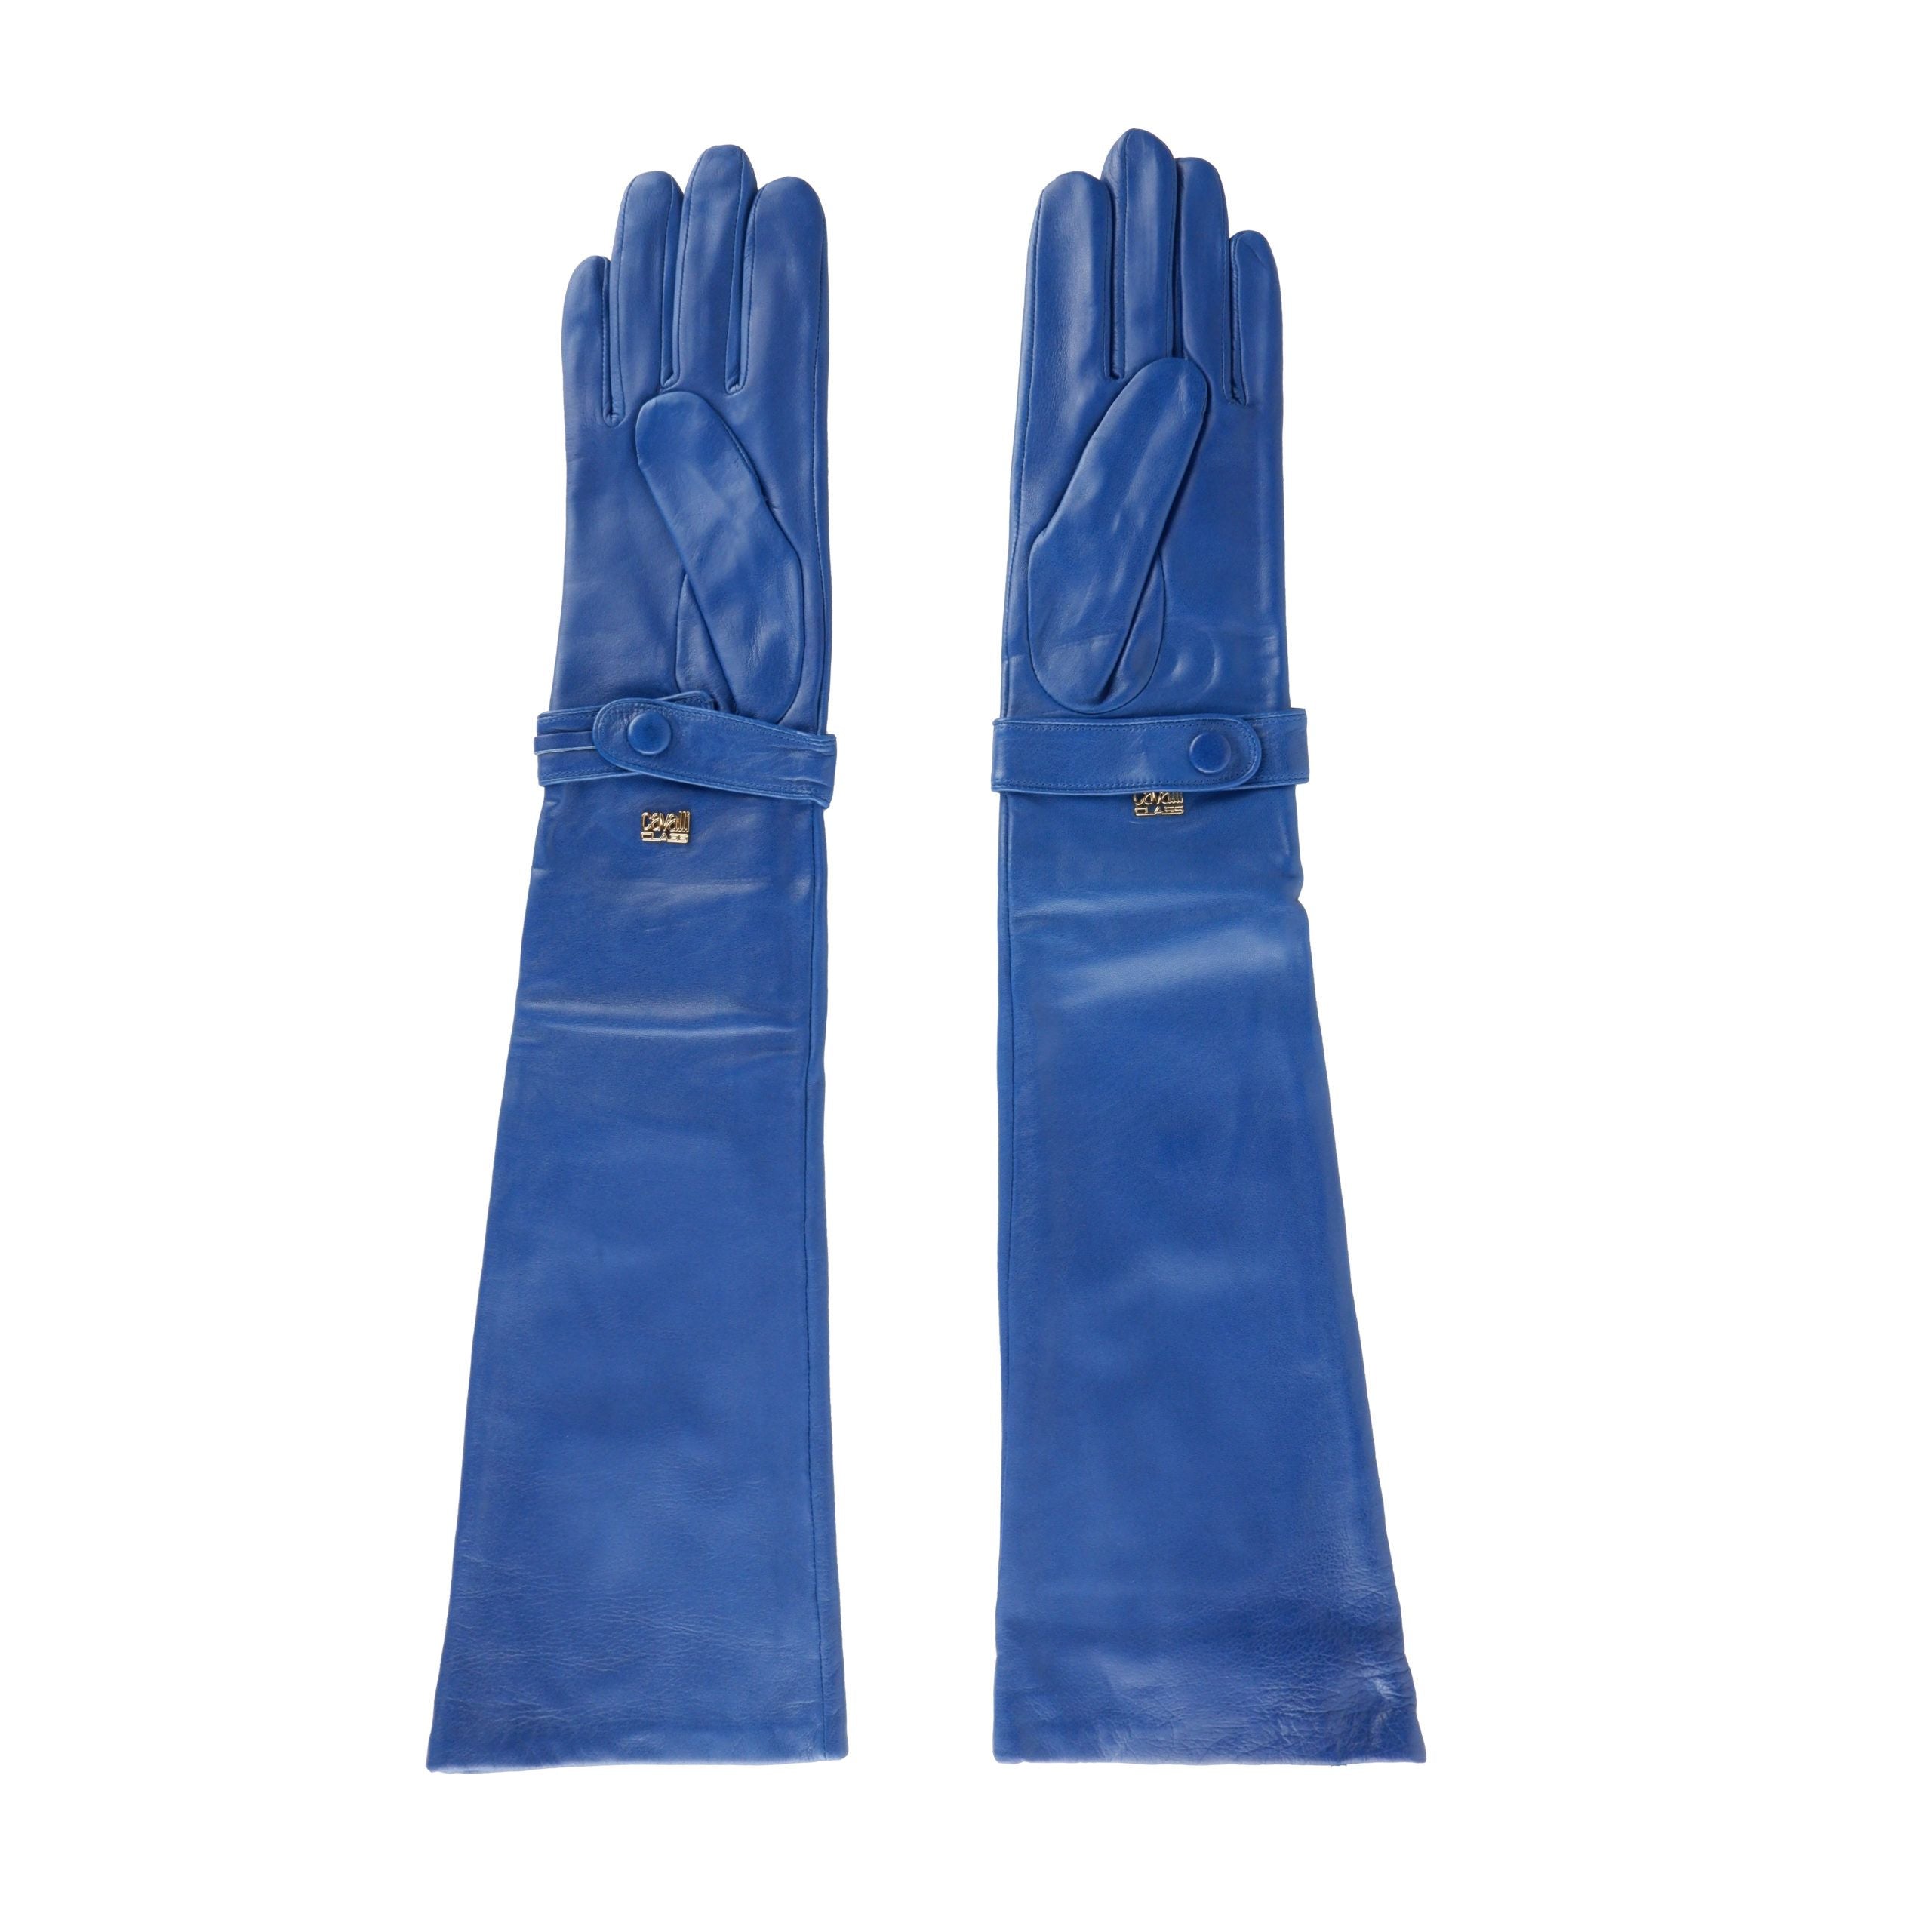 Cavalli Class Blue Leather Di Lambskin Glove